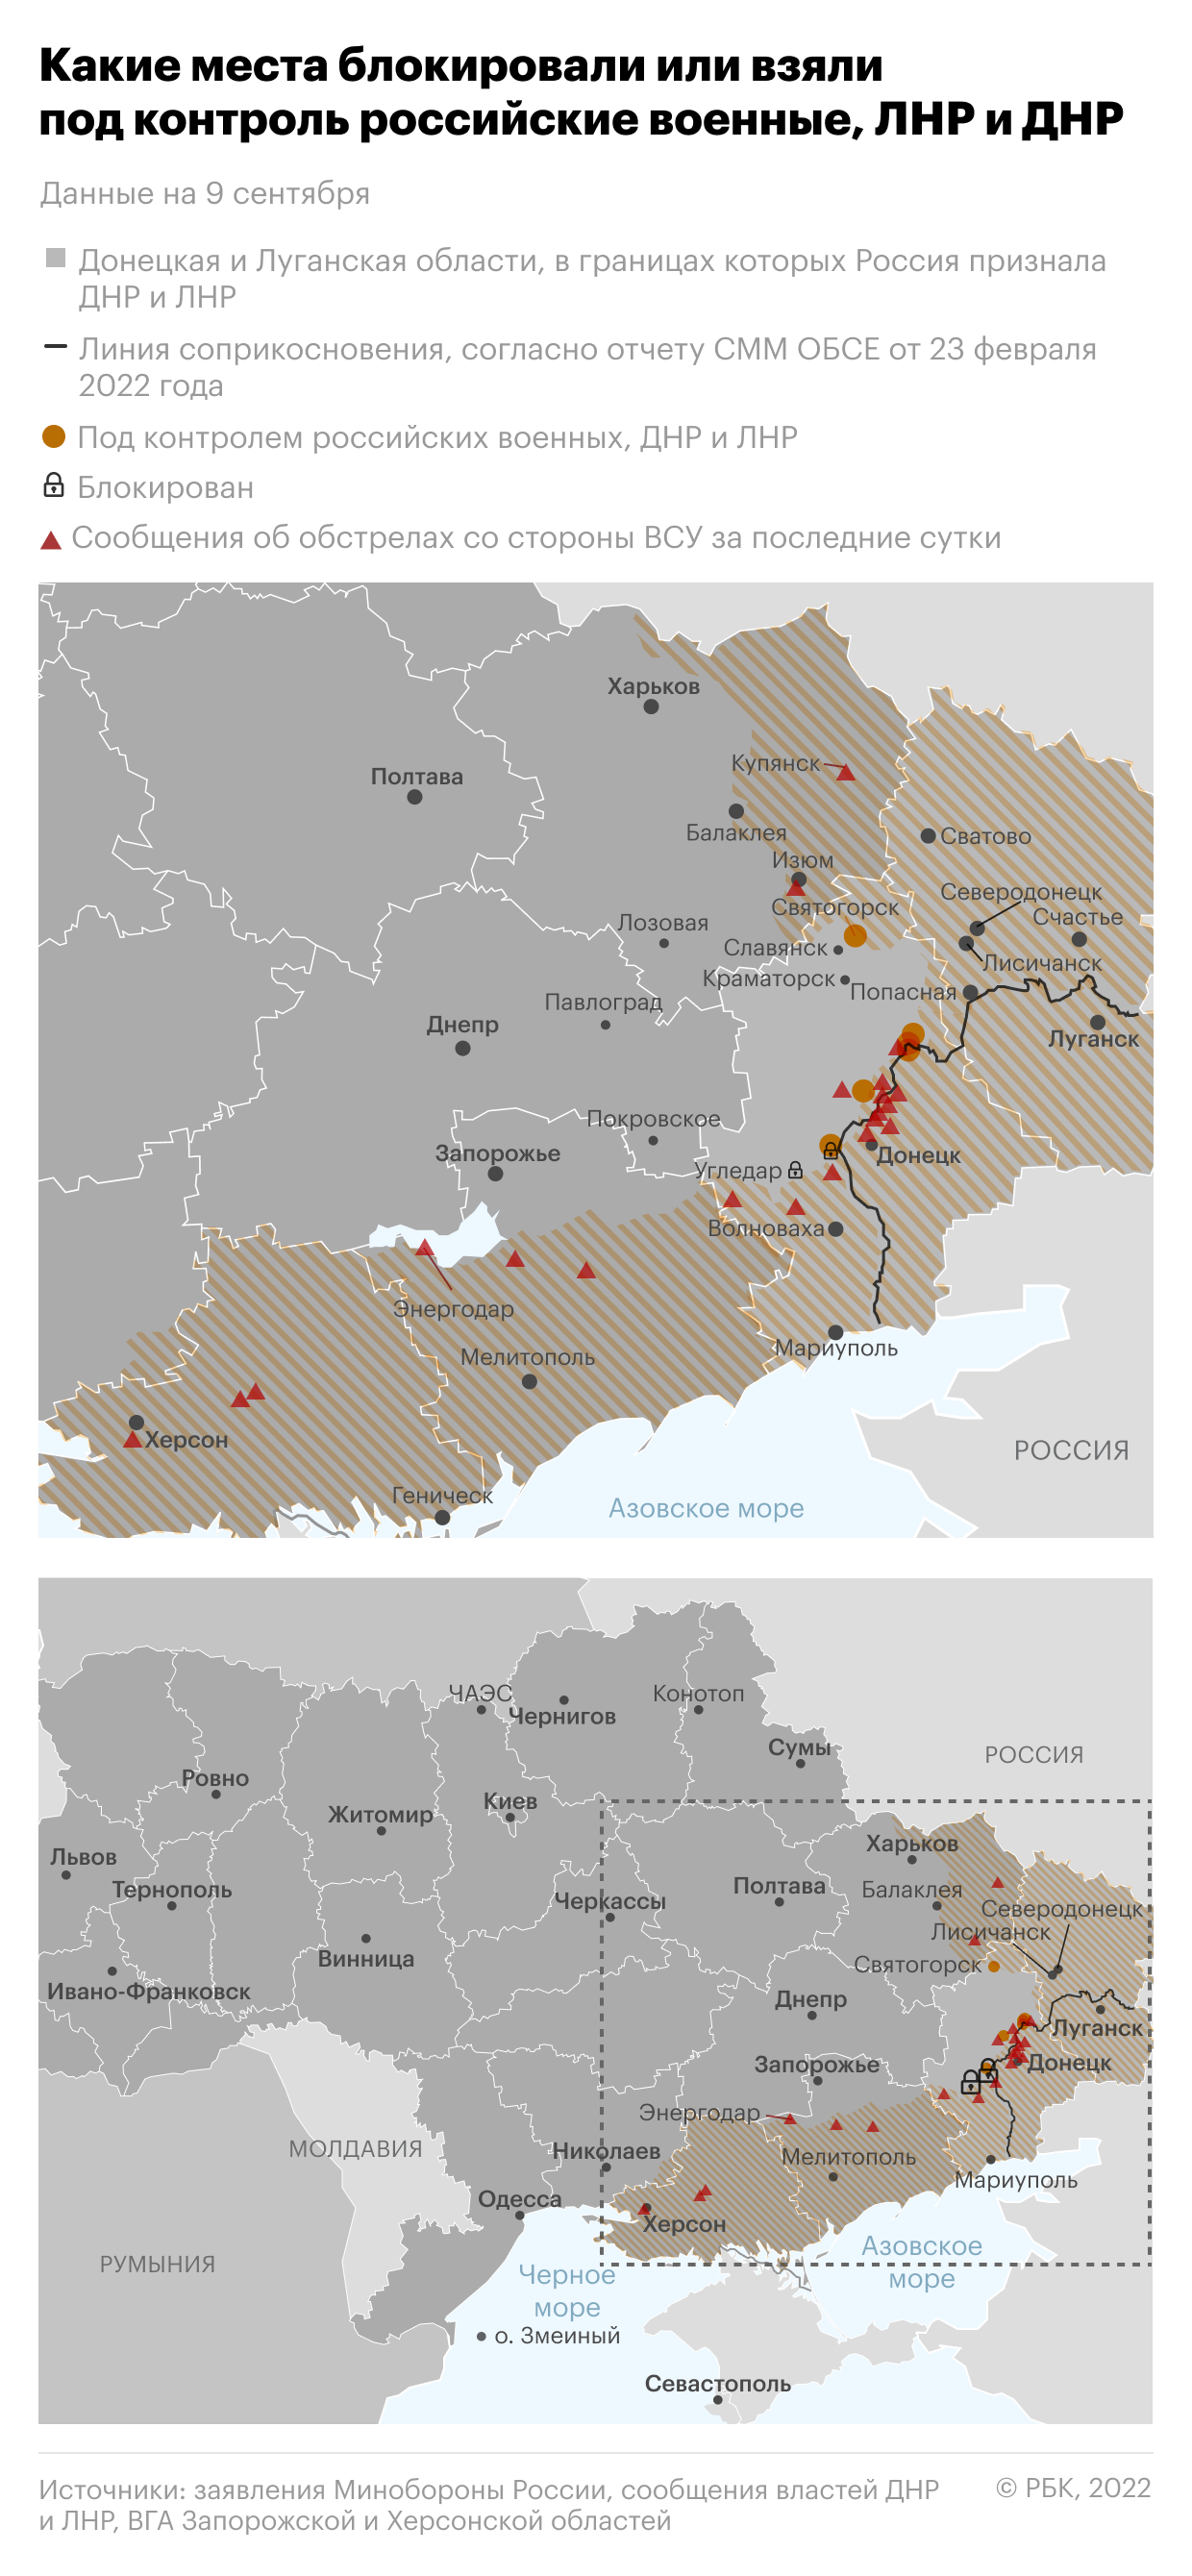 Пушилин заявил, что союзные силы «вгрызлись» в окраины Артемовска"/>













